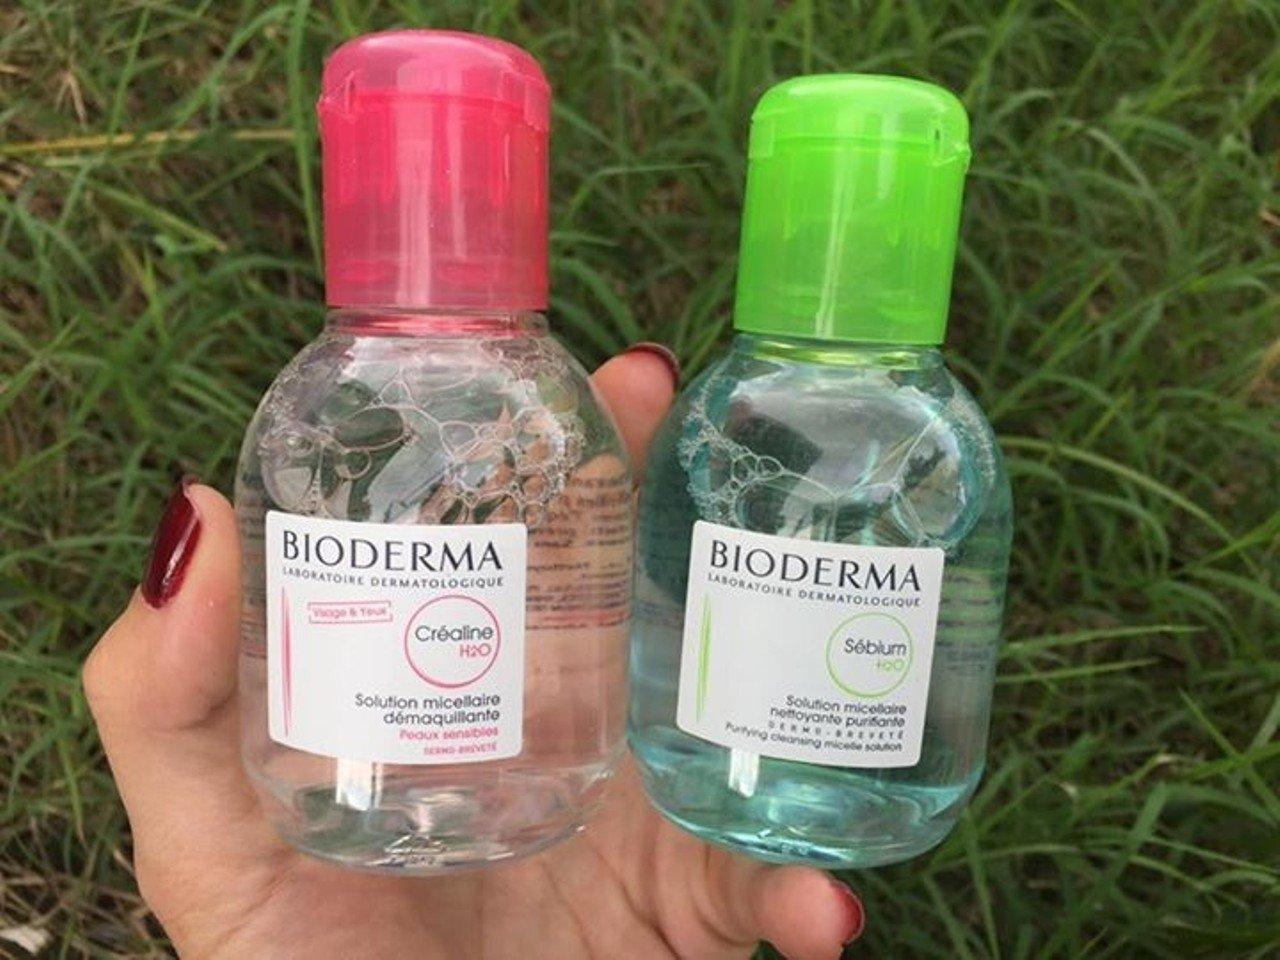 Nước tẩy trang Bioderma xuất sứ từ Pháp là sản phẩm tẩy trang rất được ưa chuộng. Chai có màu xanh là dành cho da dầu mụn và da nhạy c